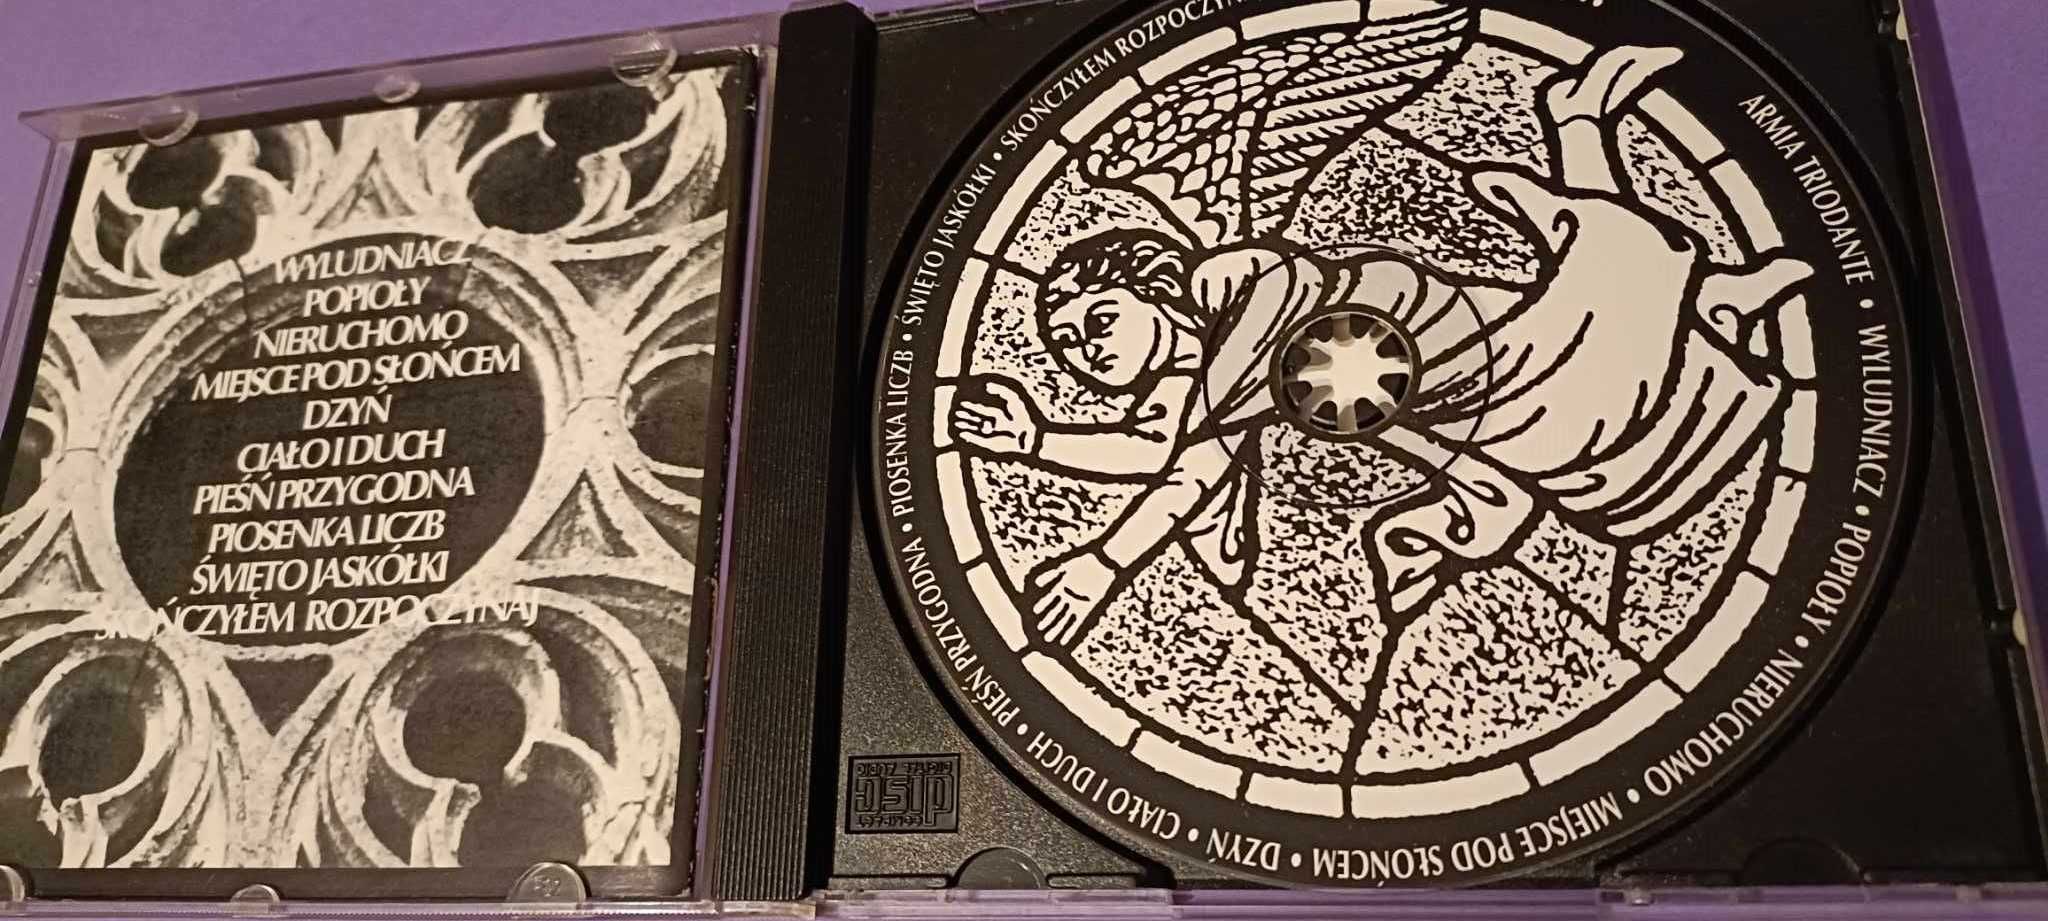 Armia – Triodante CD 1994 SP Records używana